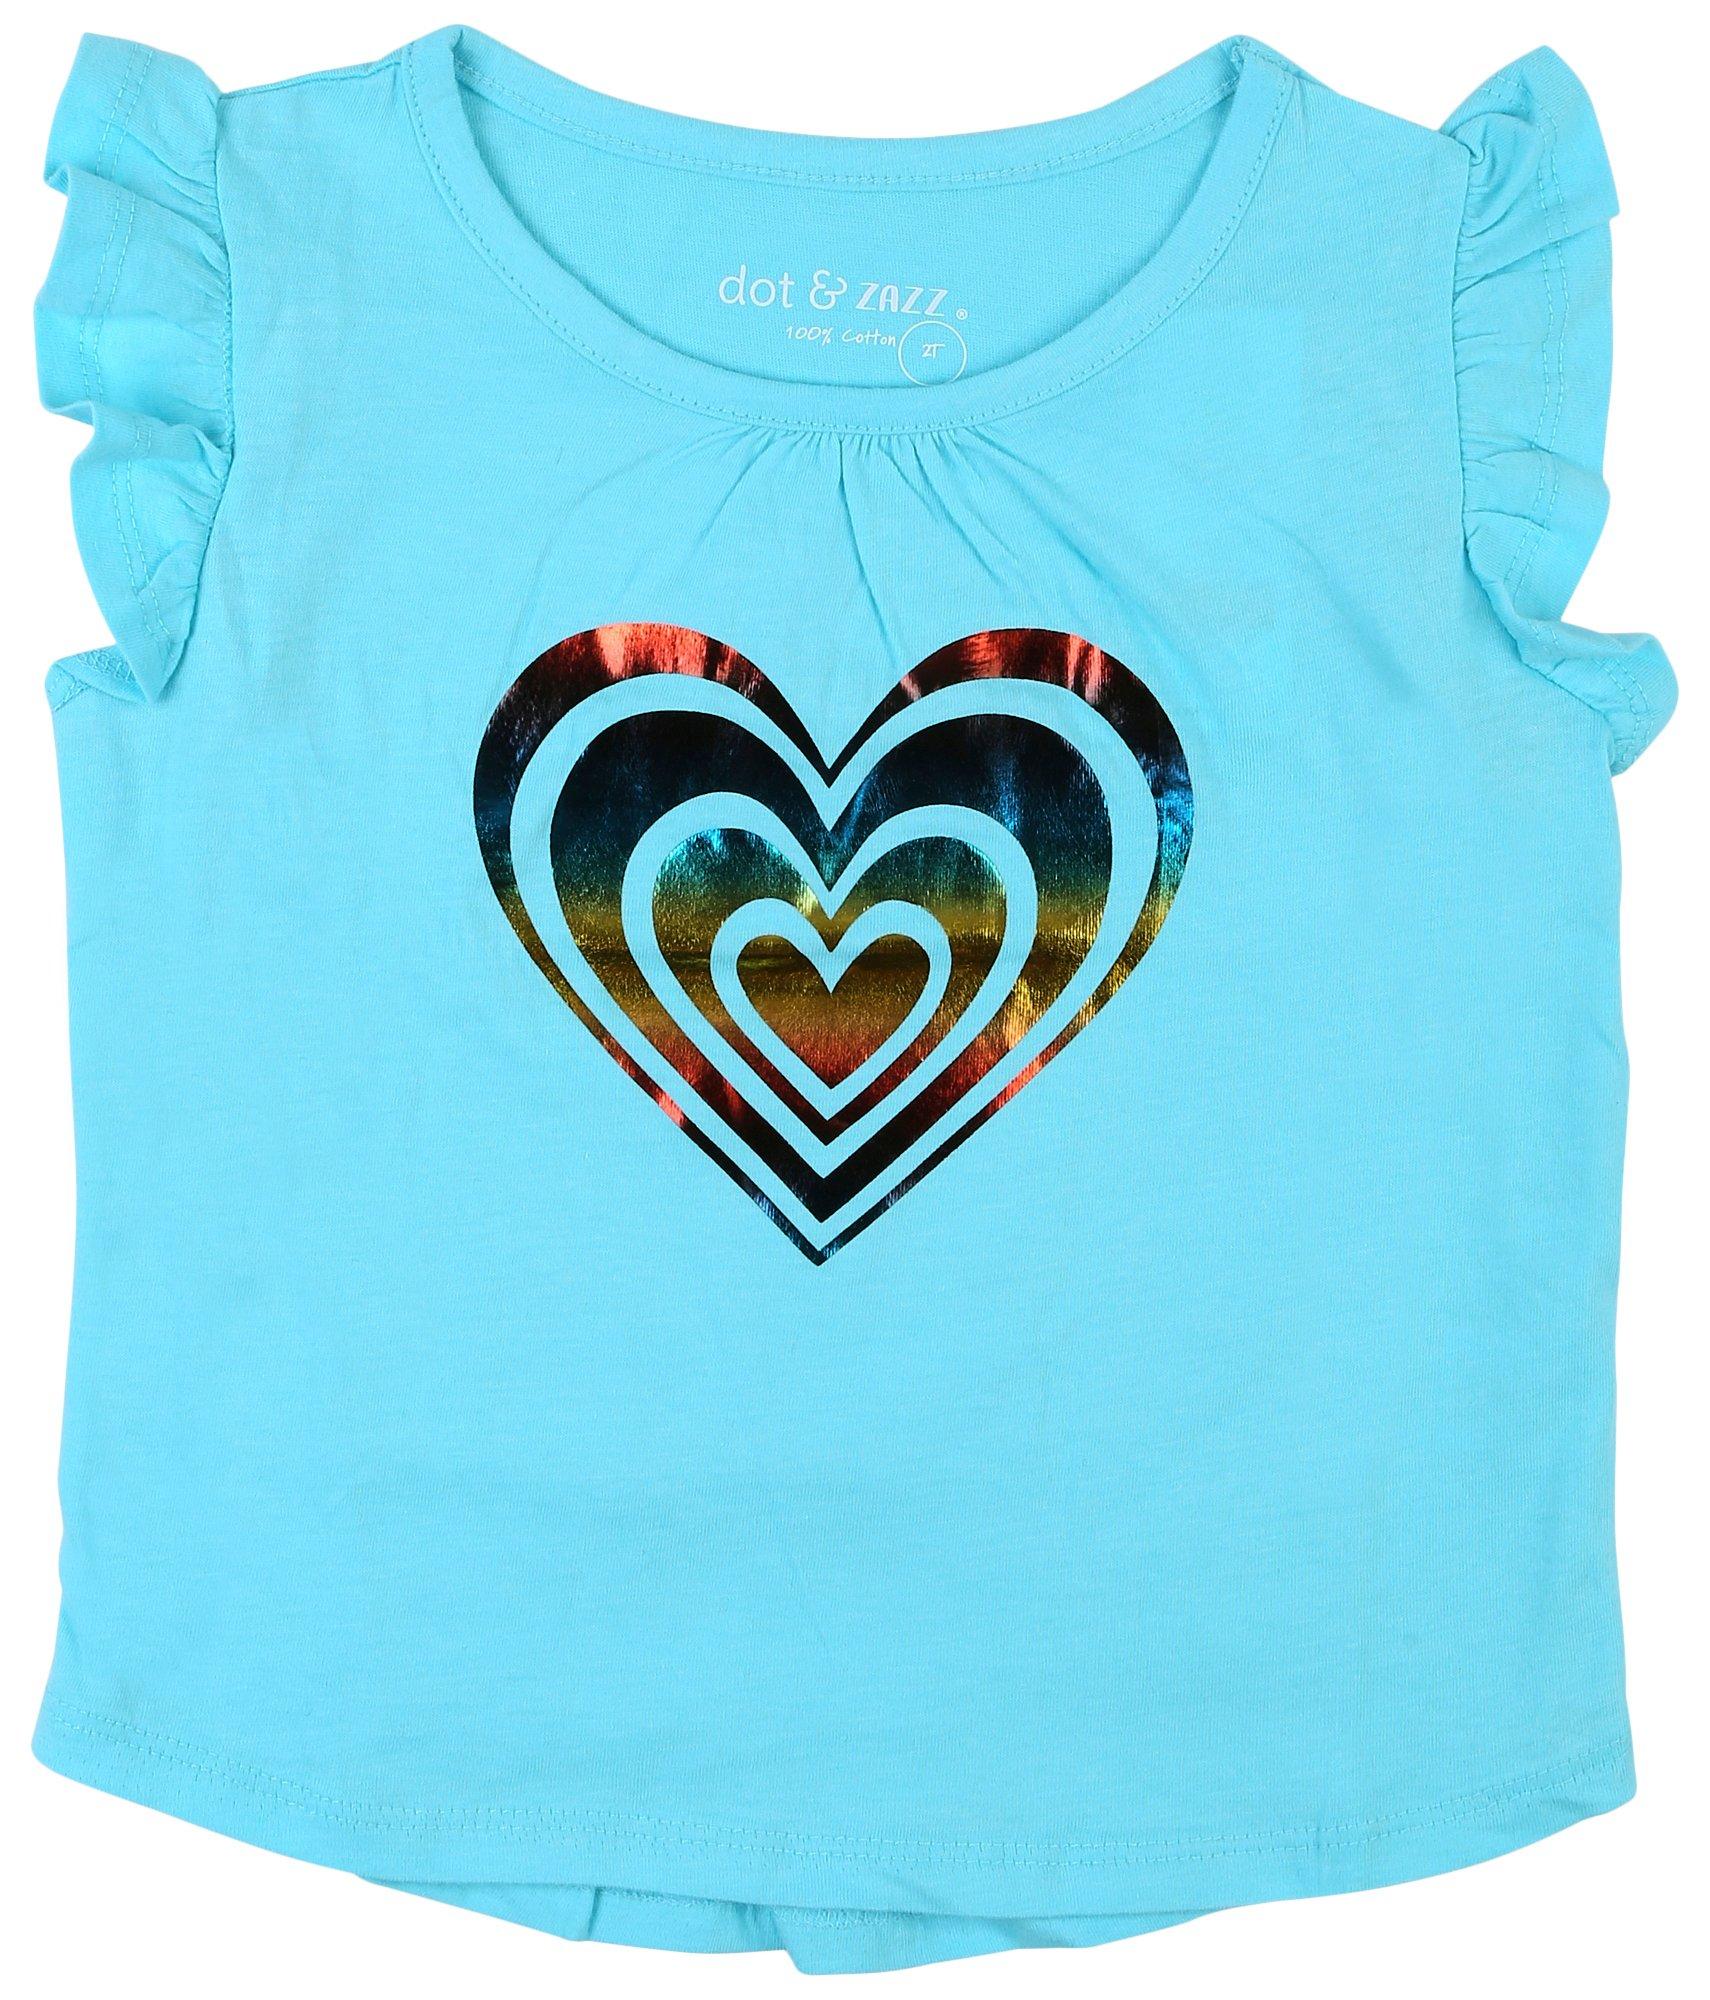 DOT & ZAZZ Toddler Girls Tinsel Heart Flutter Sleeve Top